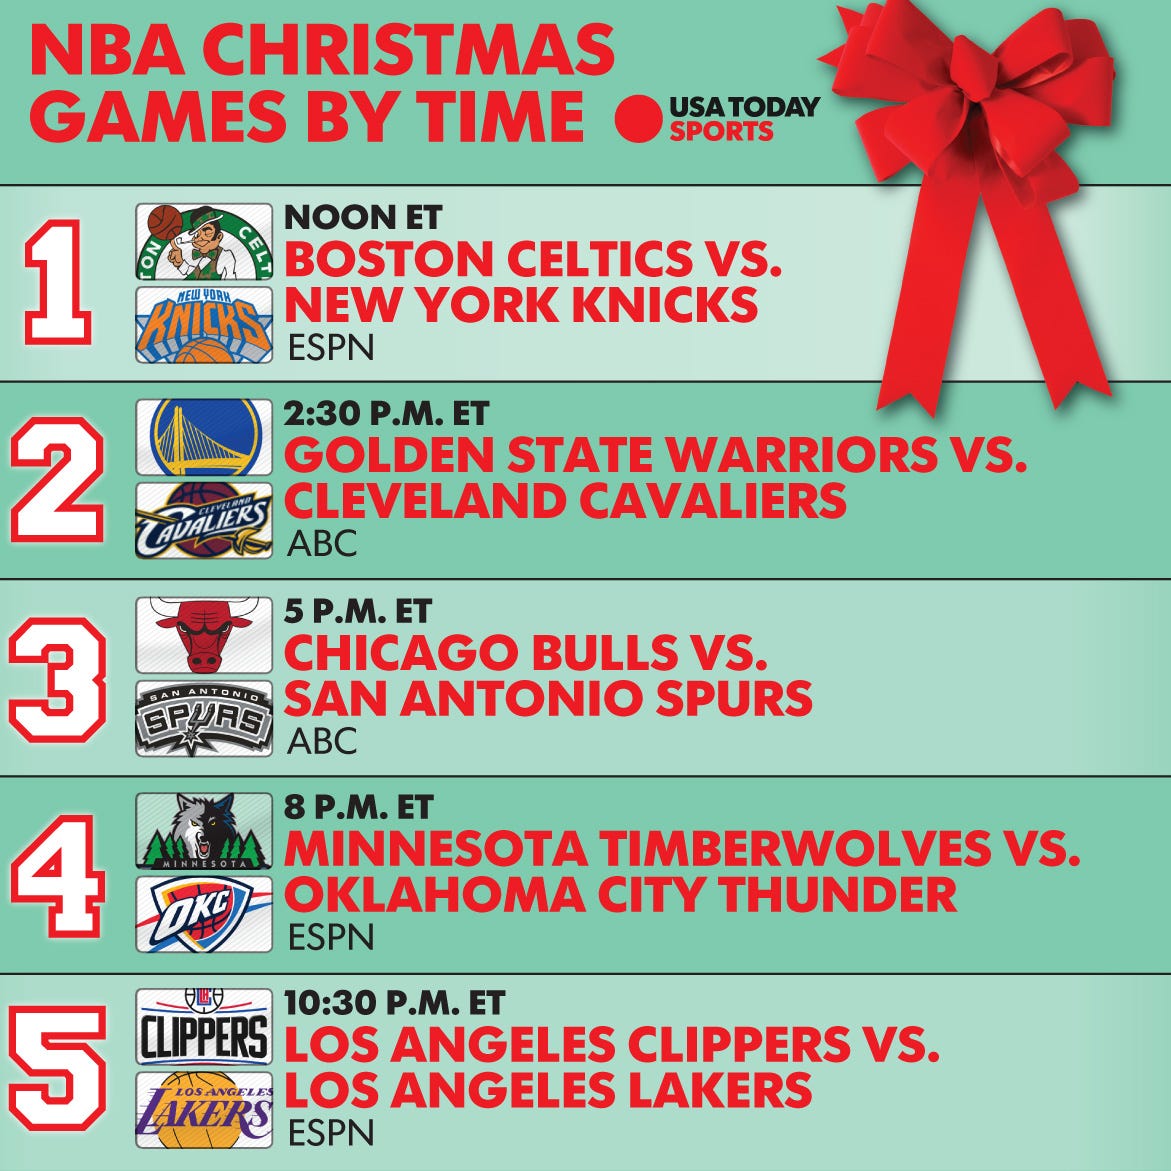 NBA Christmas games - Wikipedia